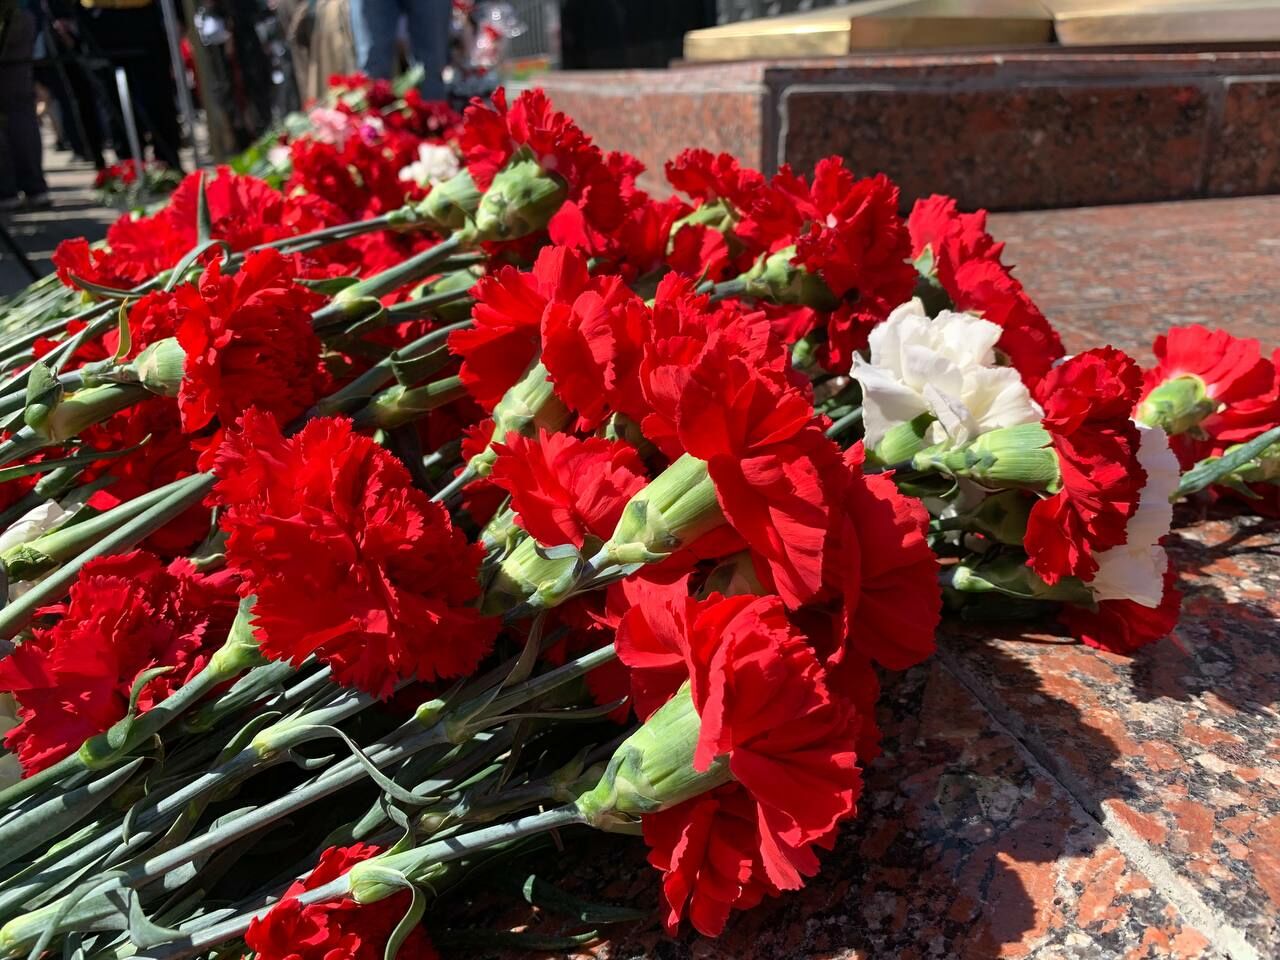 В ходе спецоперации на Украине погиб челнинец Ильдар Садриев